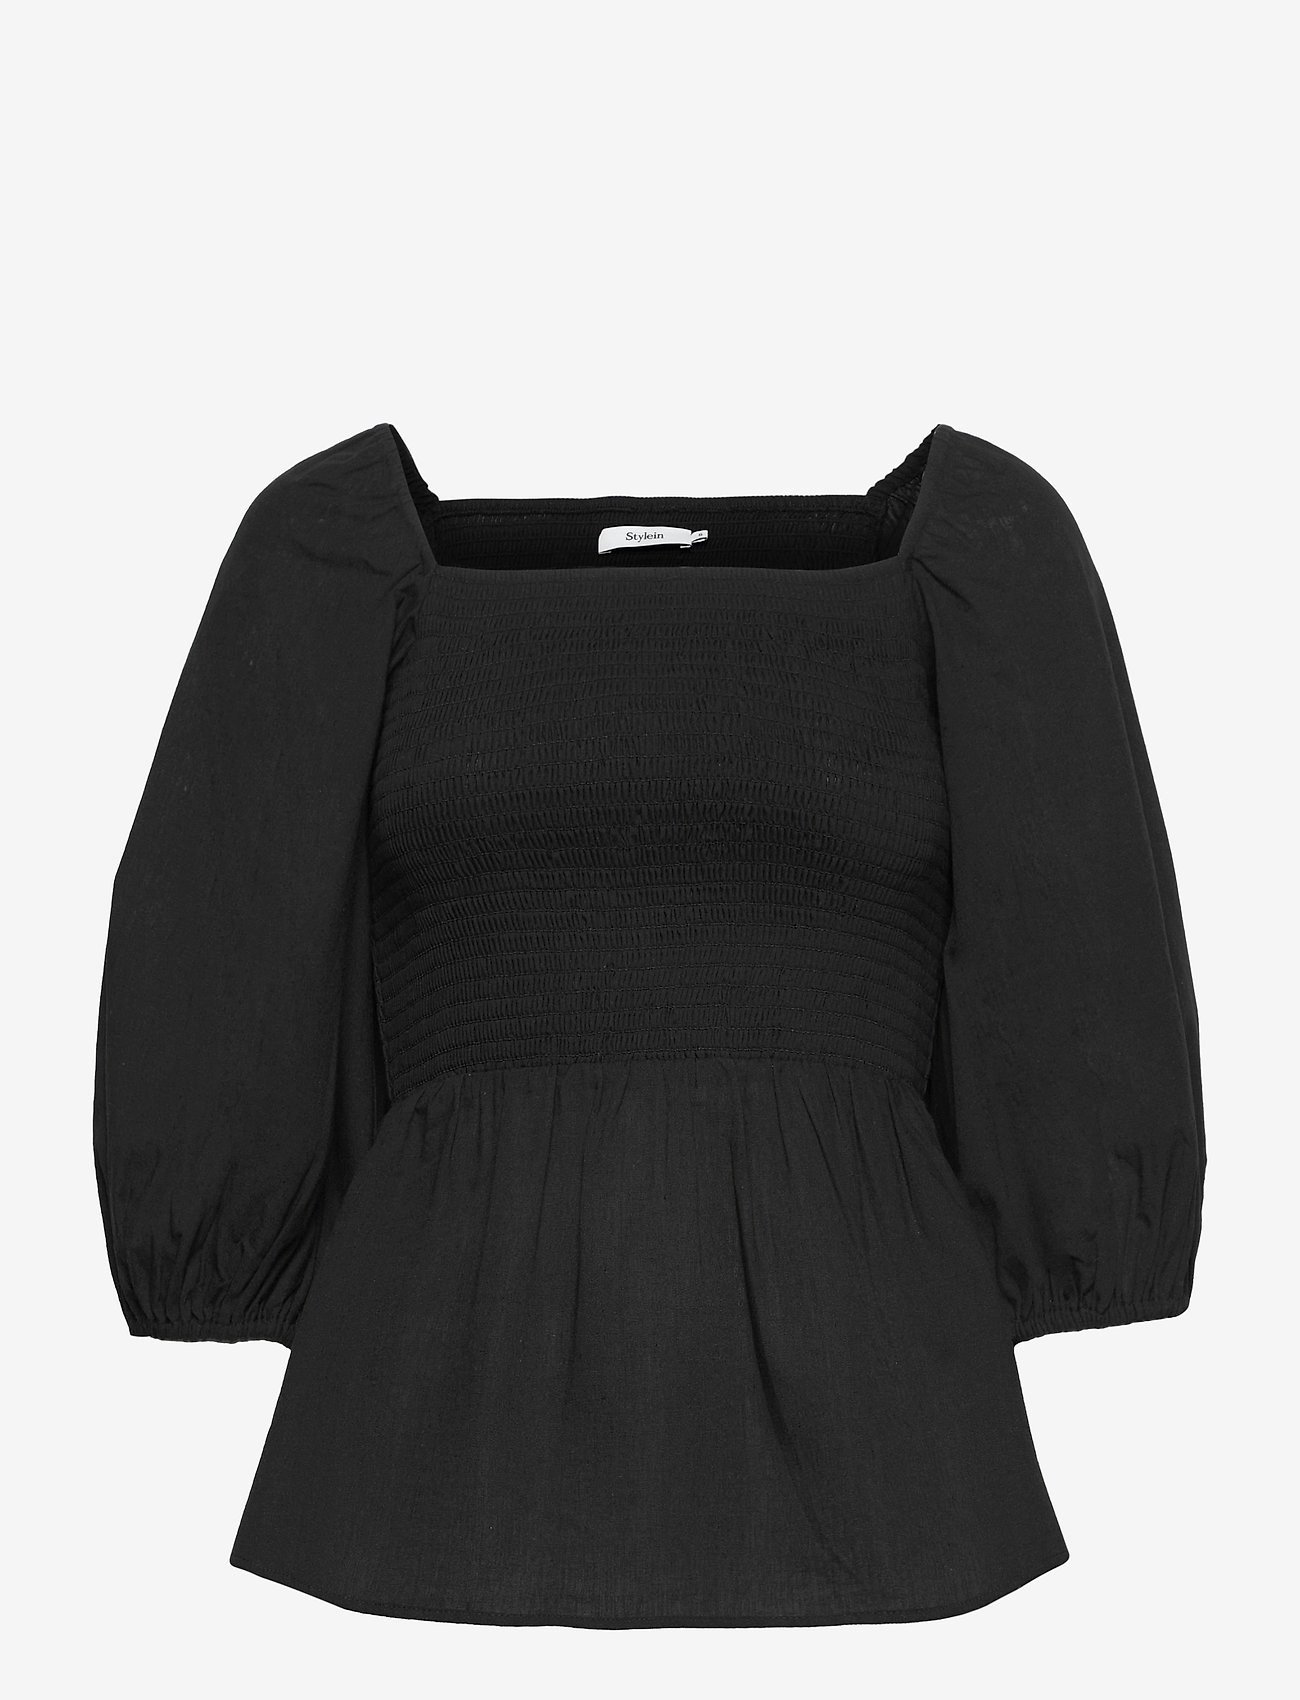 Stylein - SAVILLE - long sleeved blouses - black - 1